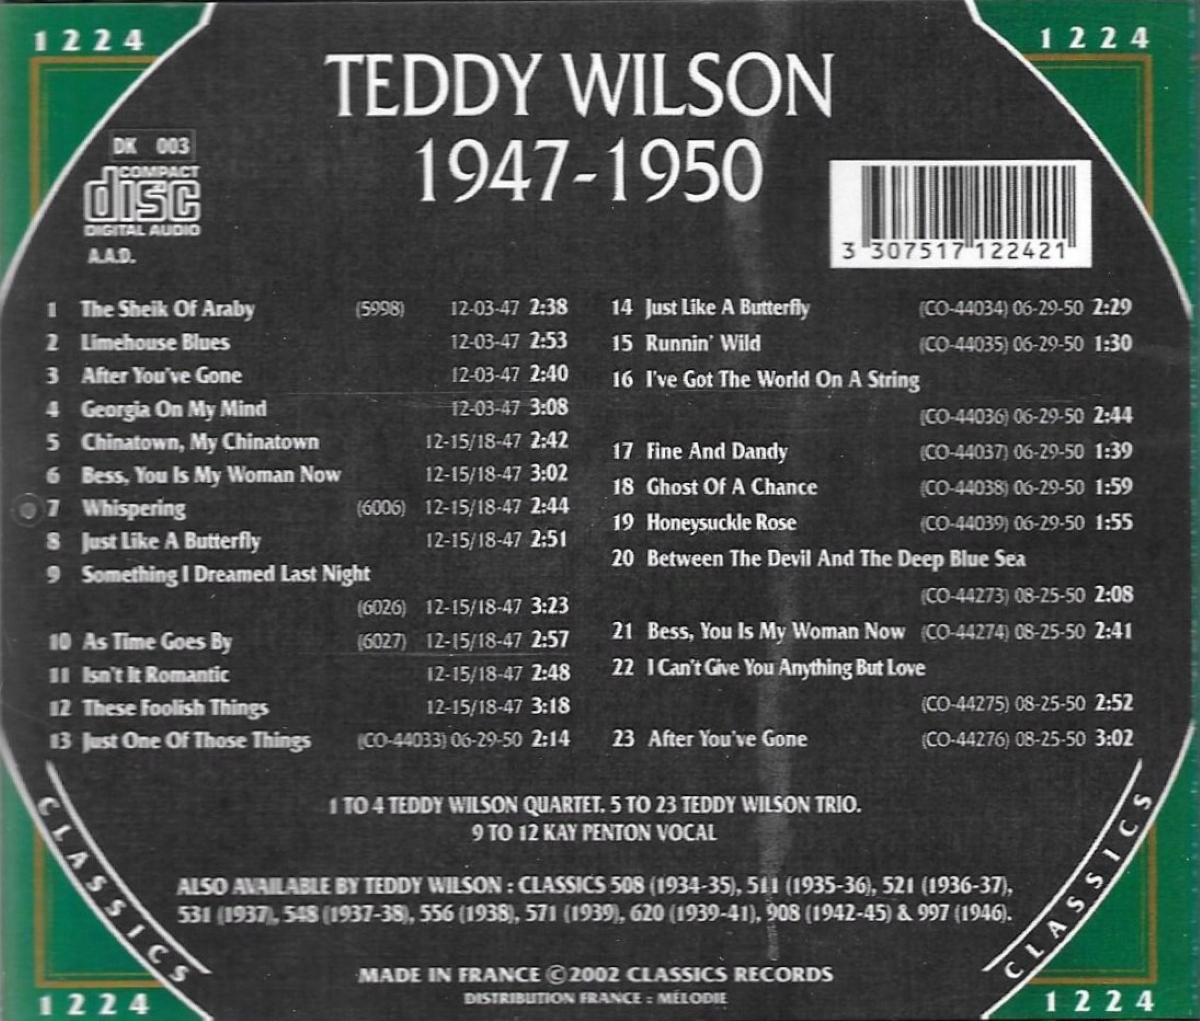 The Chronological Teddy Wilson: 1947-1950